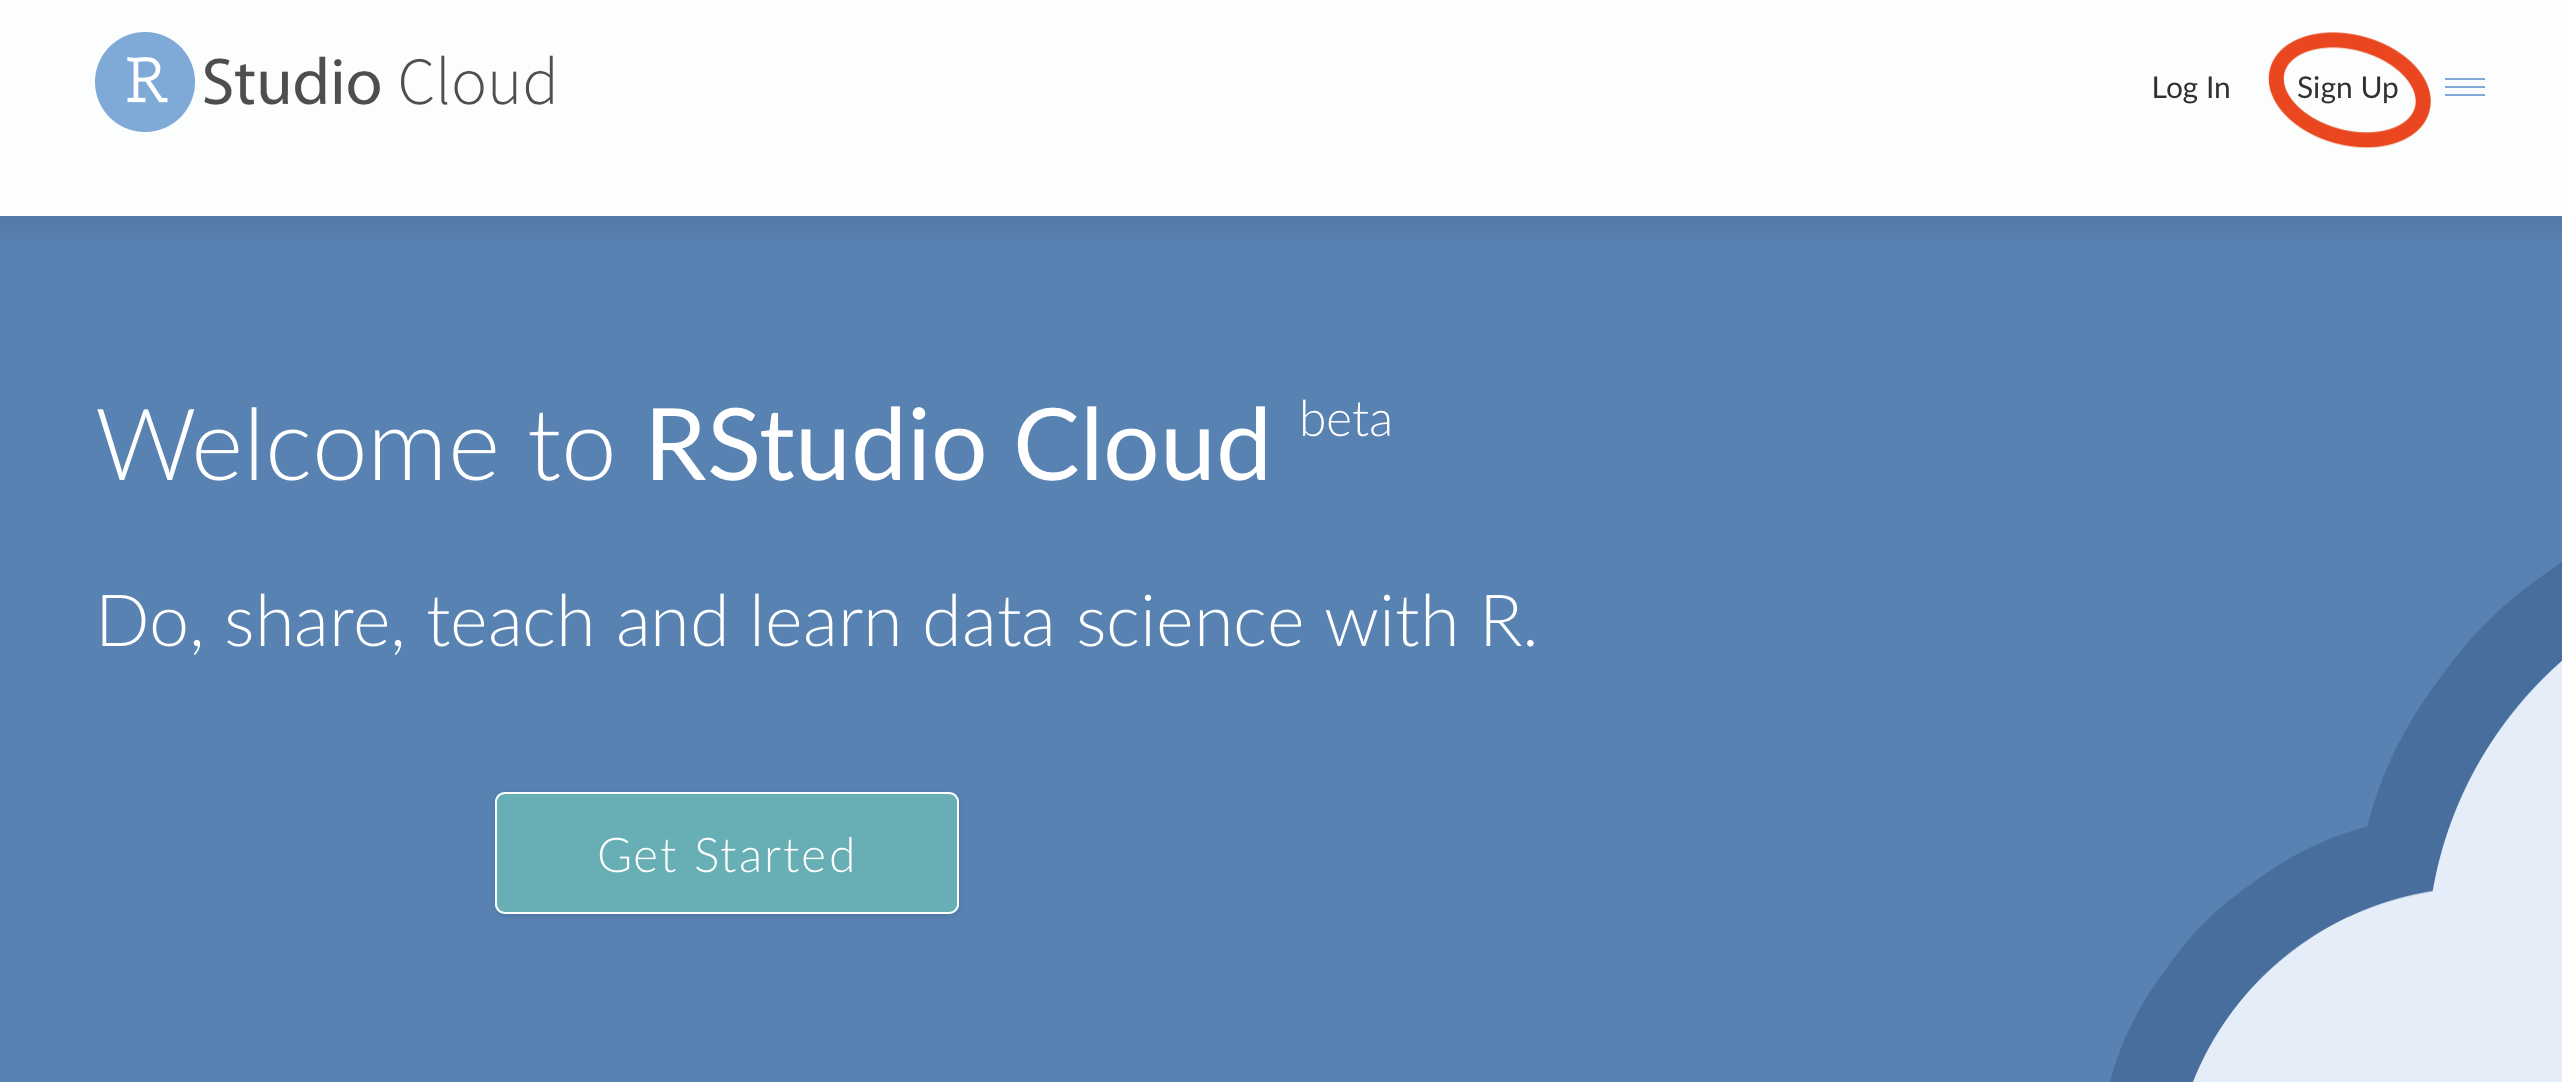 rstudio cloud online